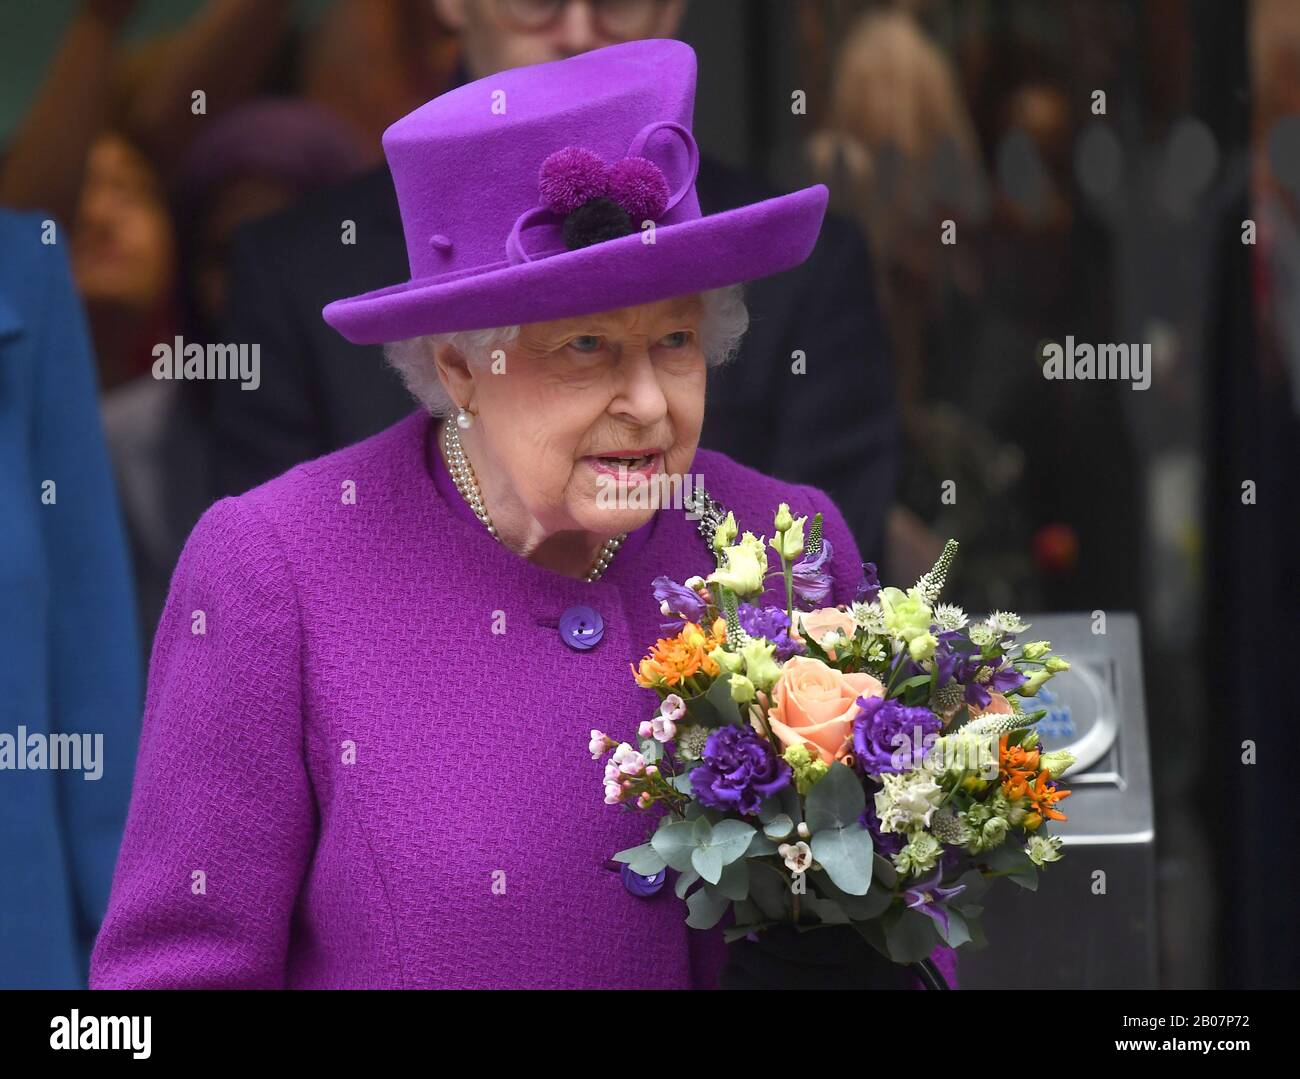 Königin Elizabeth II. Trägt einen Blumenstrauß, als sie verlässt, nachdem sie offiziell die neuen Räumlichkeiten der Royal National ENT und Eastman Dental Hospitals in London eröffnet hat. Stockfoto